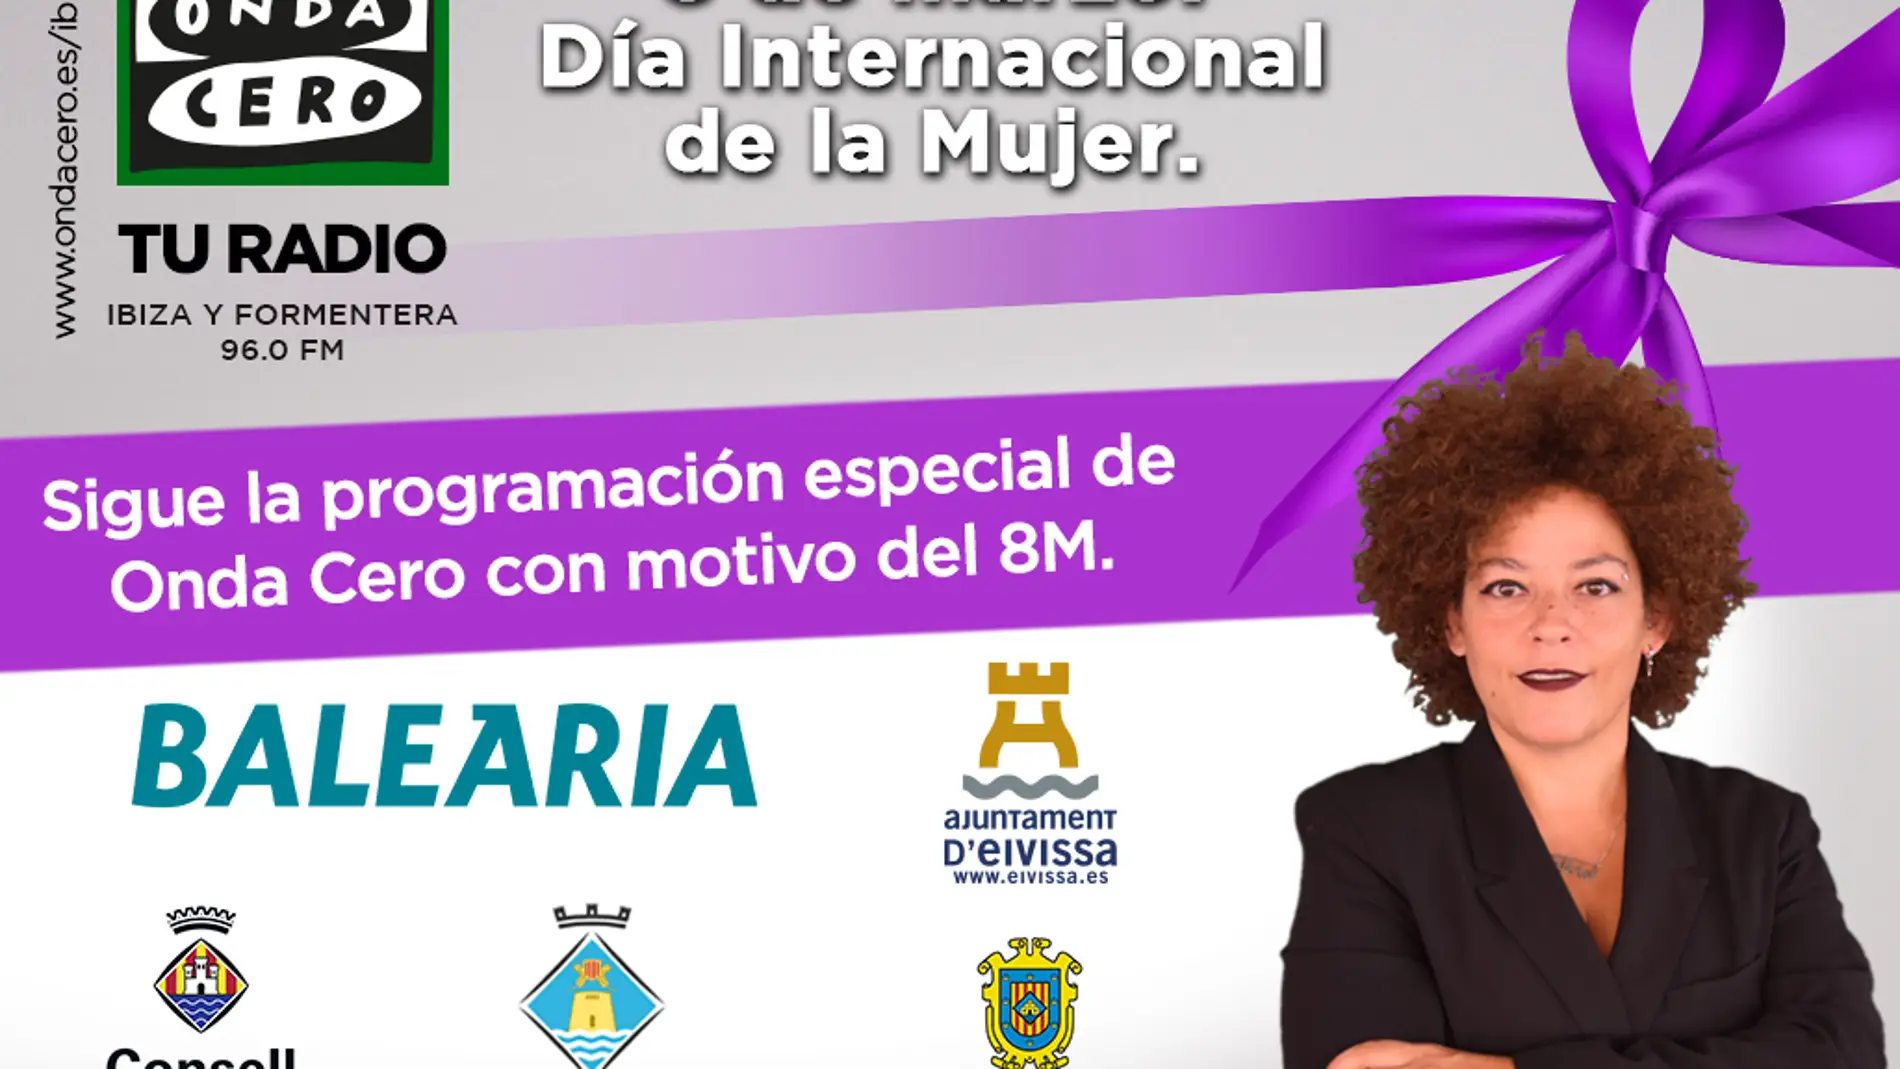 8m Día Internacional de la Mujer en Onda Cero Ibiza y Formentera